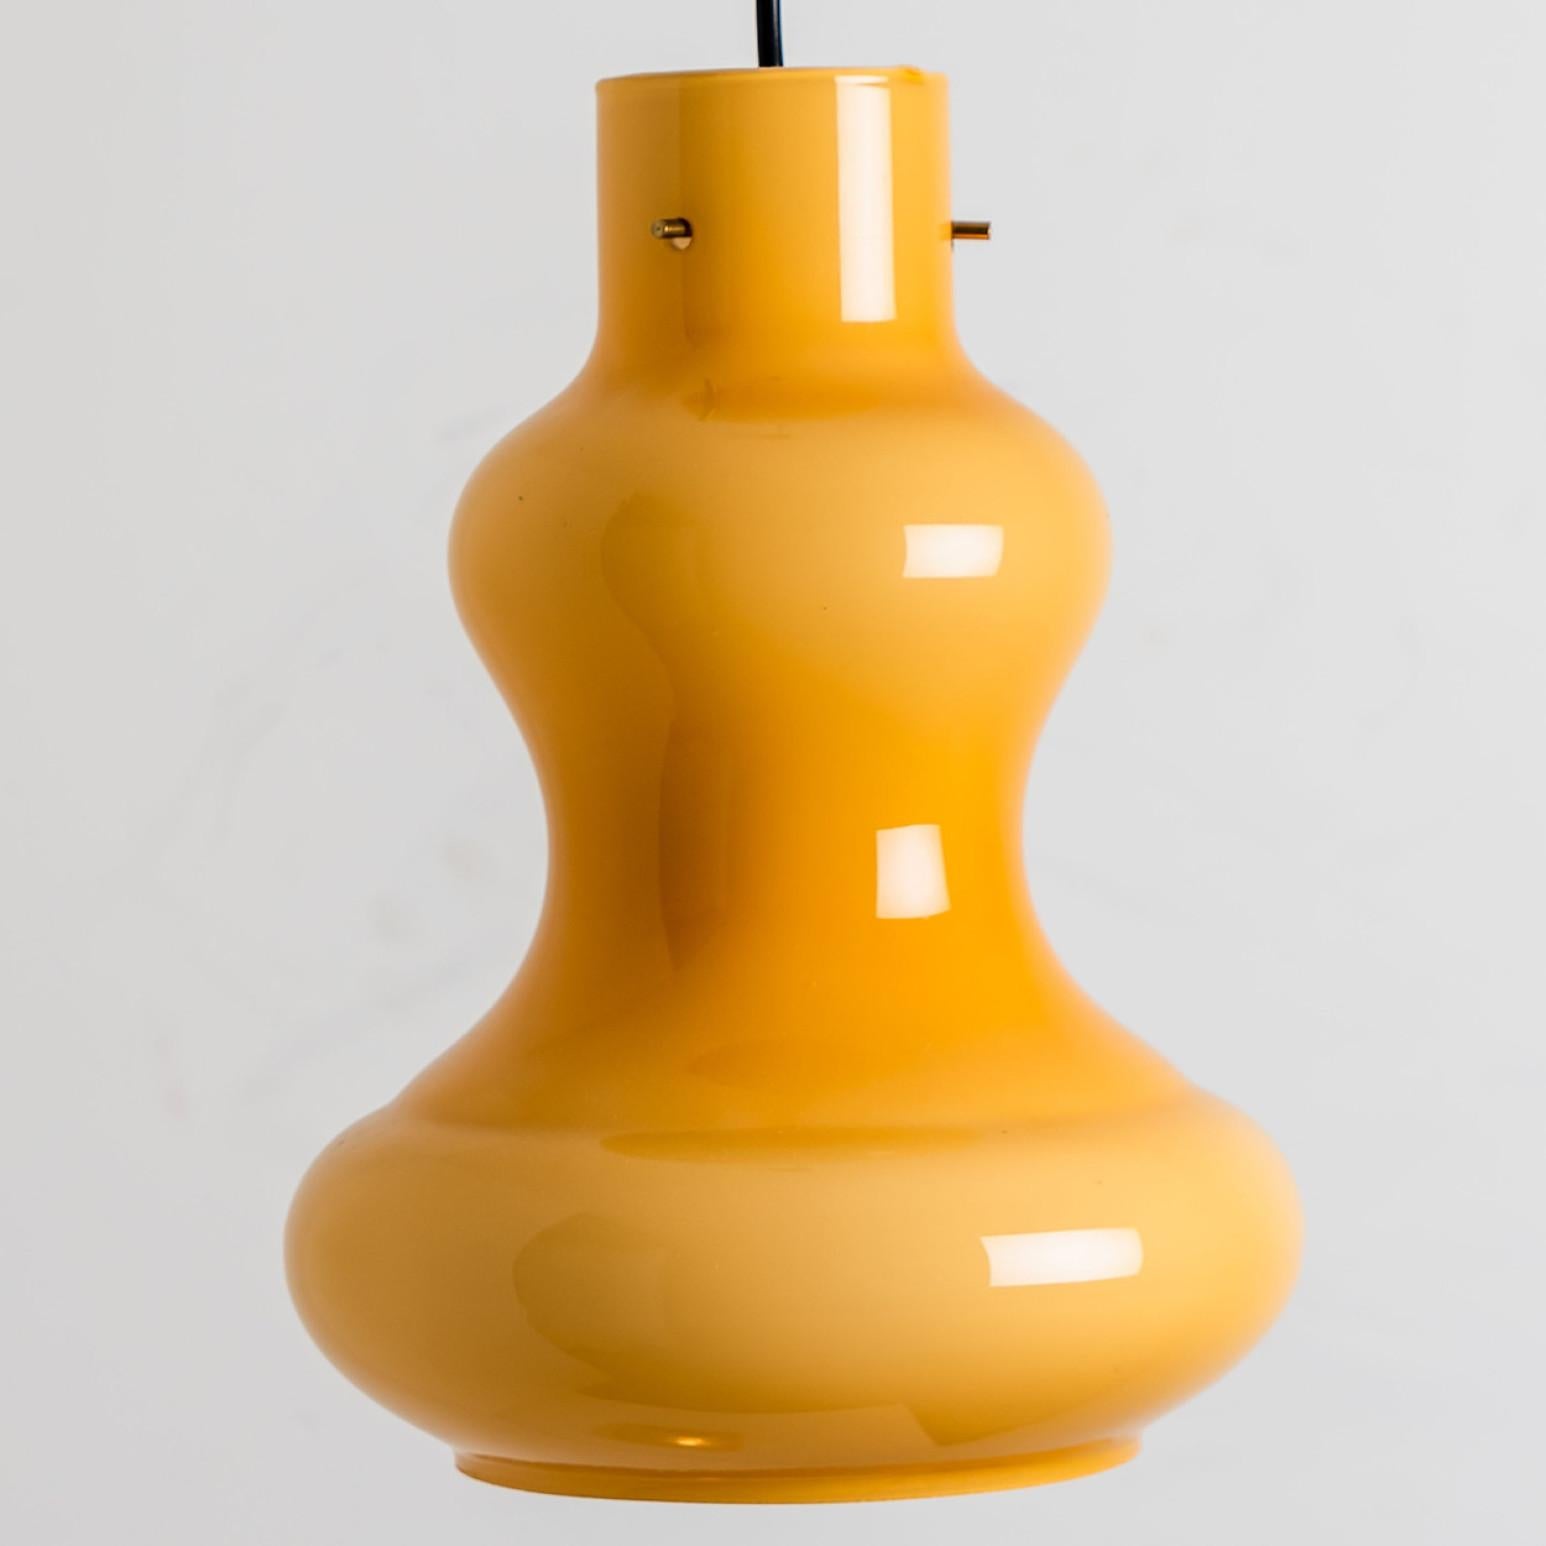 Eine schöne Pendelleuchte aus gelbem Glas, die in den 1960er Jahren von Massimo Vignelli für Venini hergestellt wurde.
Der Lampenschirm besteht aus gelbem Opalglas mit einer weißen Innenglasur. Echtes Muranoglas, hergestellt in Italien.

Wir haben